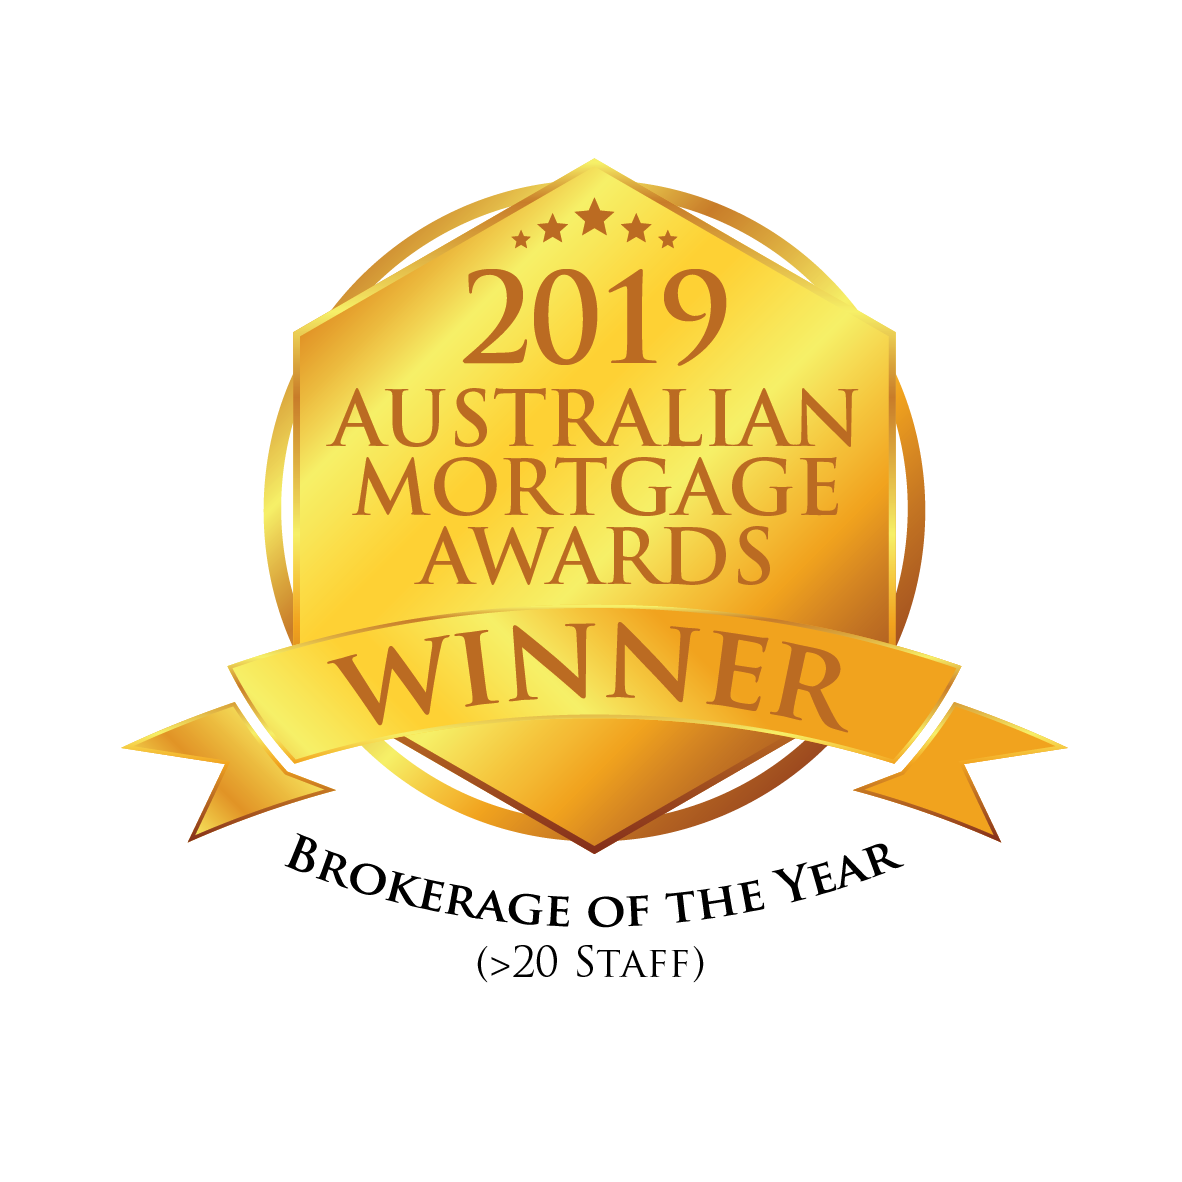 Australian Mortgage Awards 2019 Winner Seal